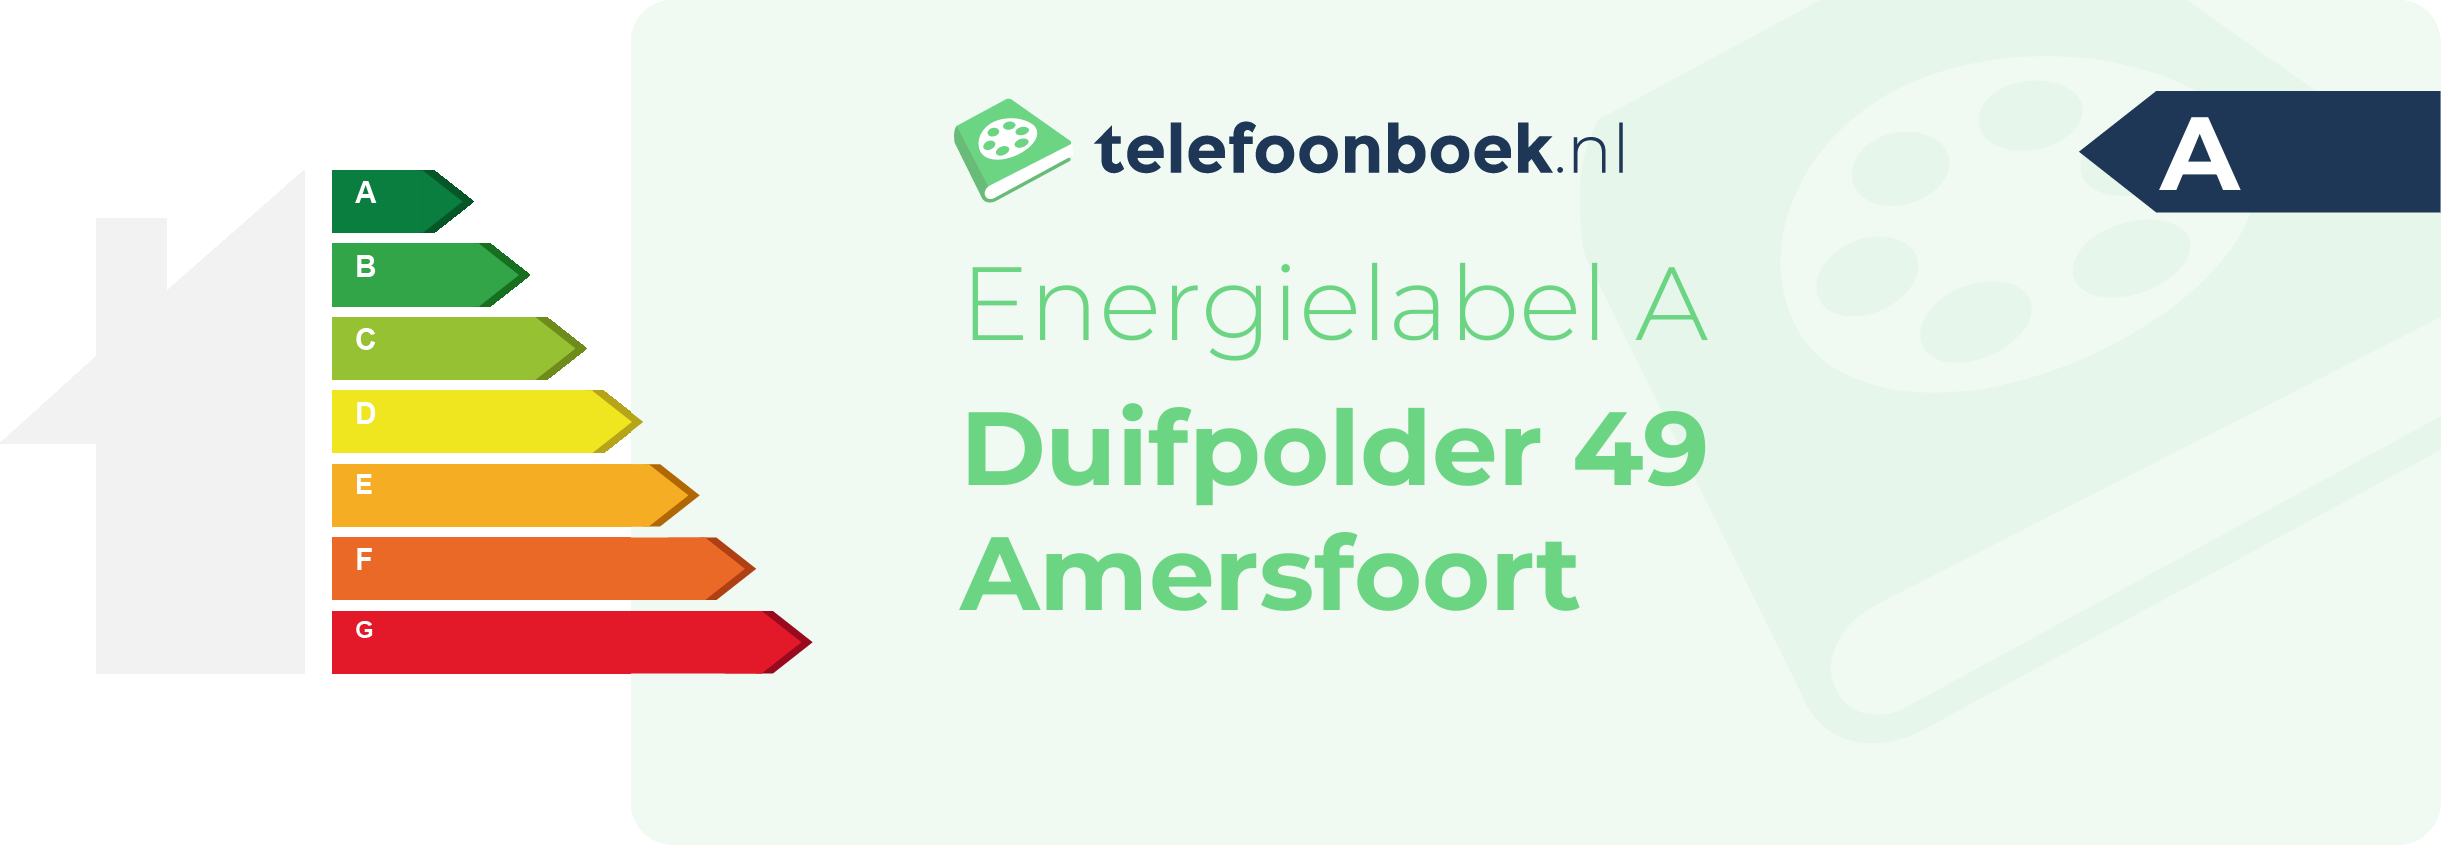 Energielabel Duifpolder 49 Amersfoort